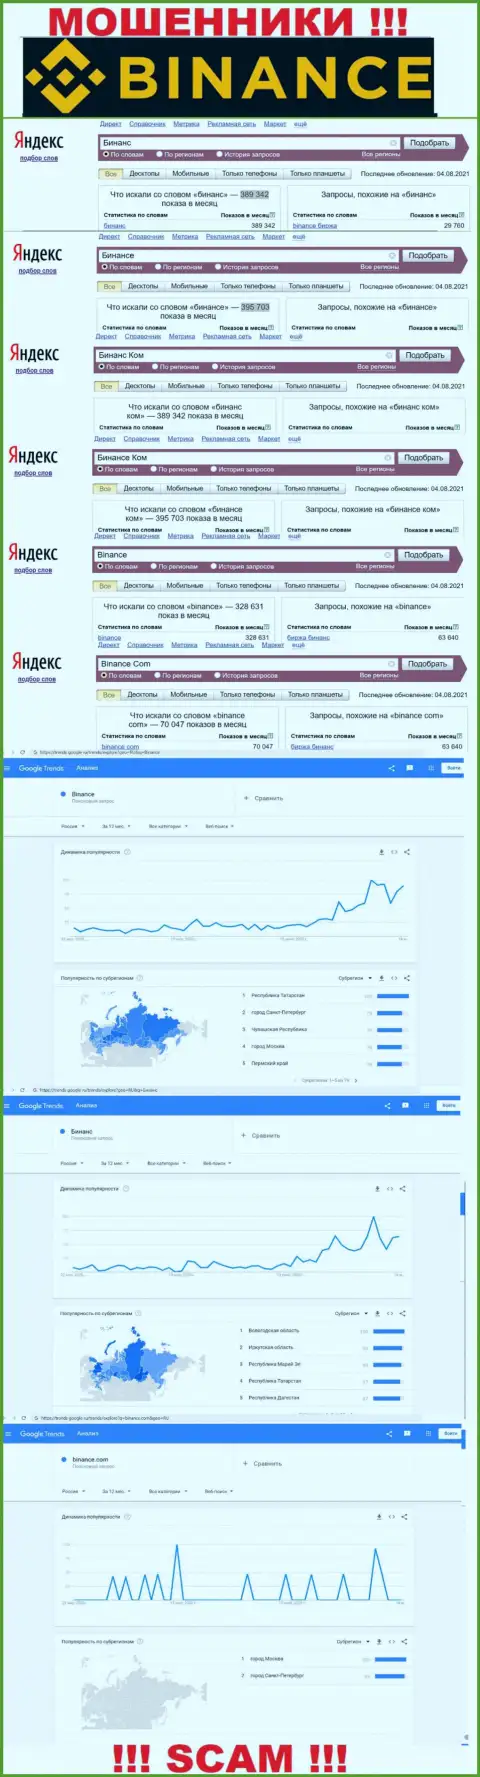 Статистические показатели о запросах в поисковиках internet сети сведений о конторе Binance